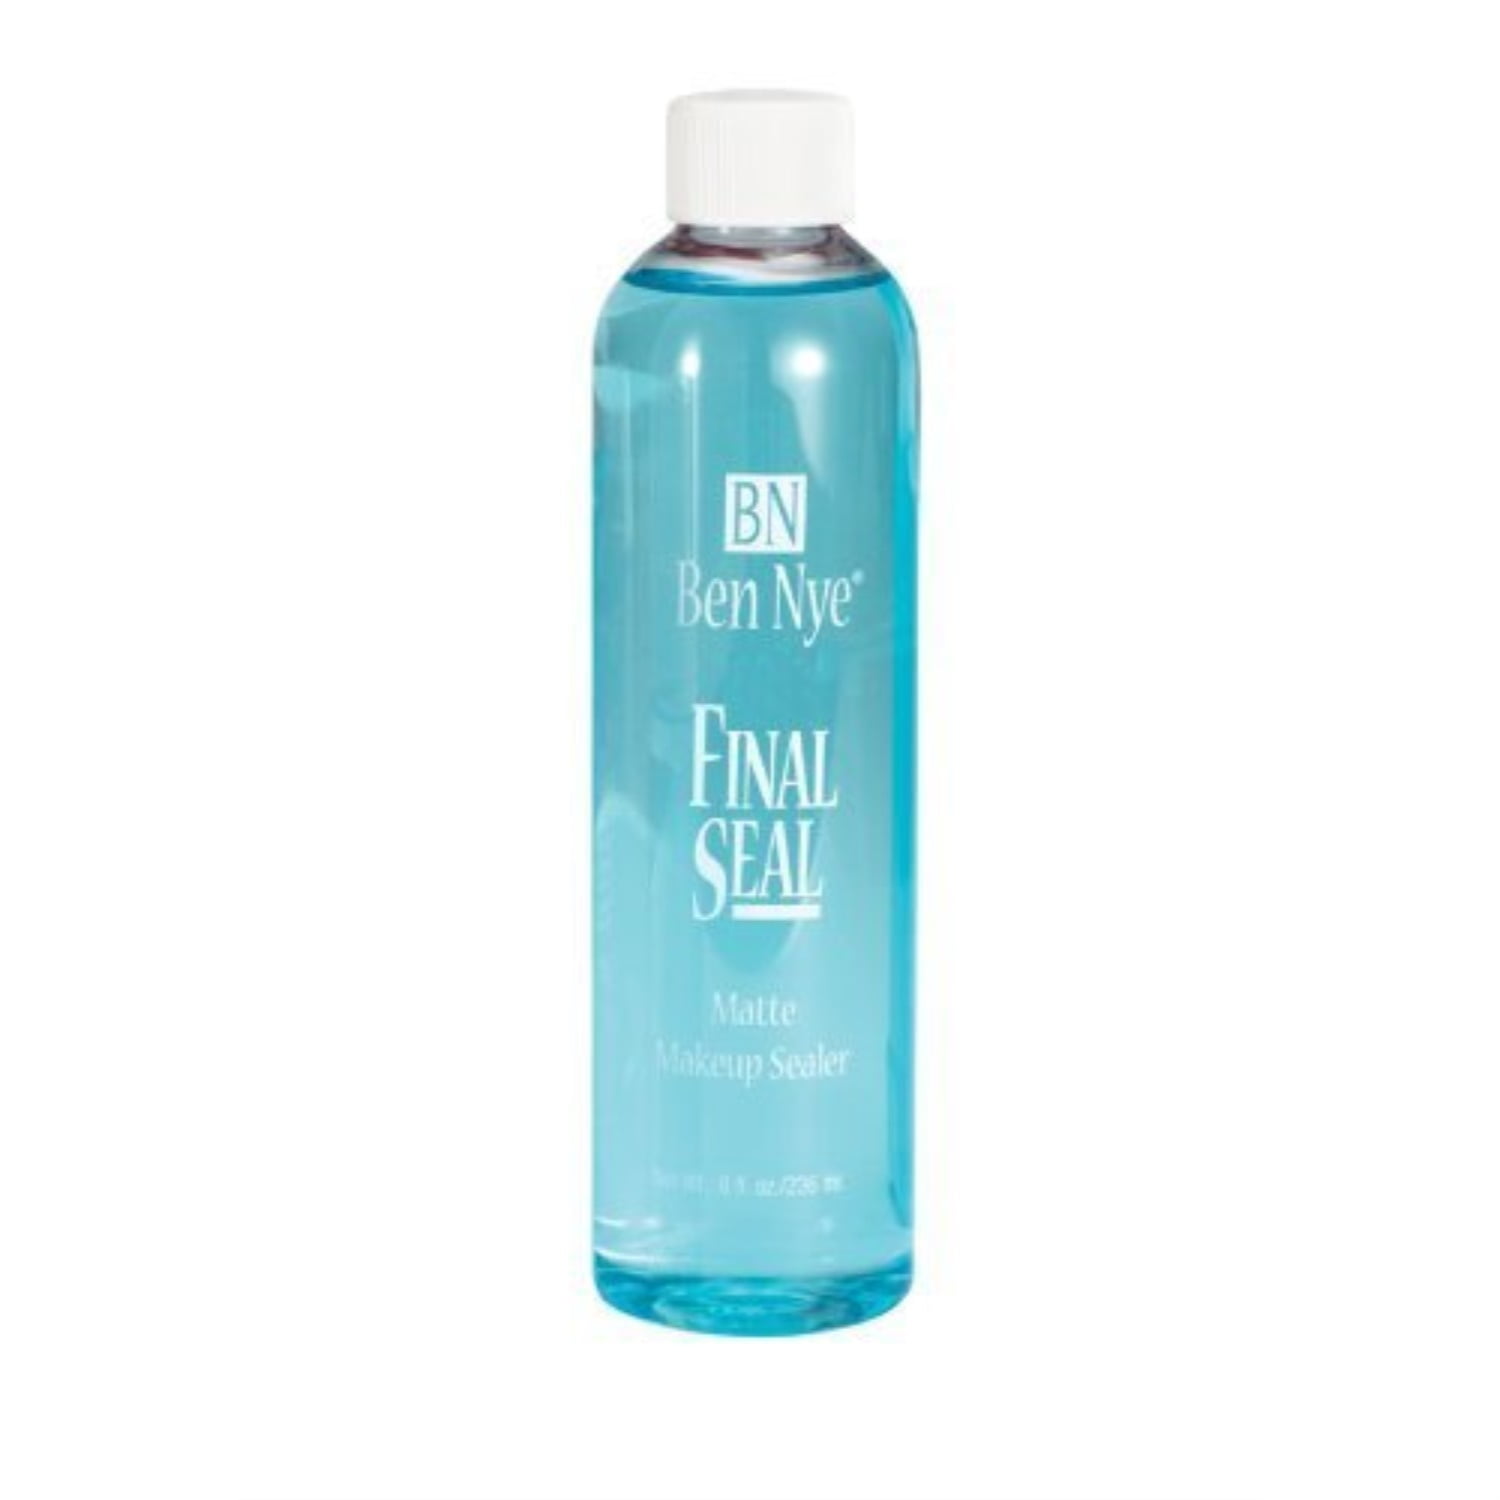 Ben Nye Final Seal Setting Spray, 2 oz